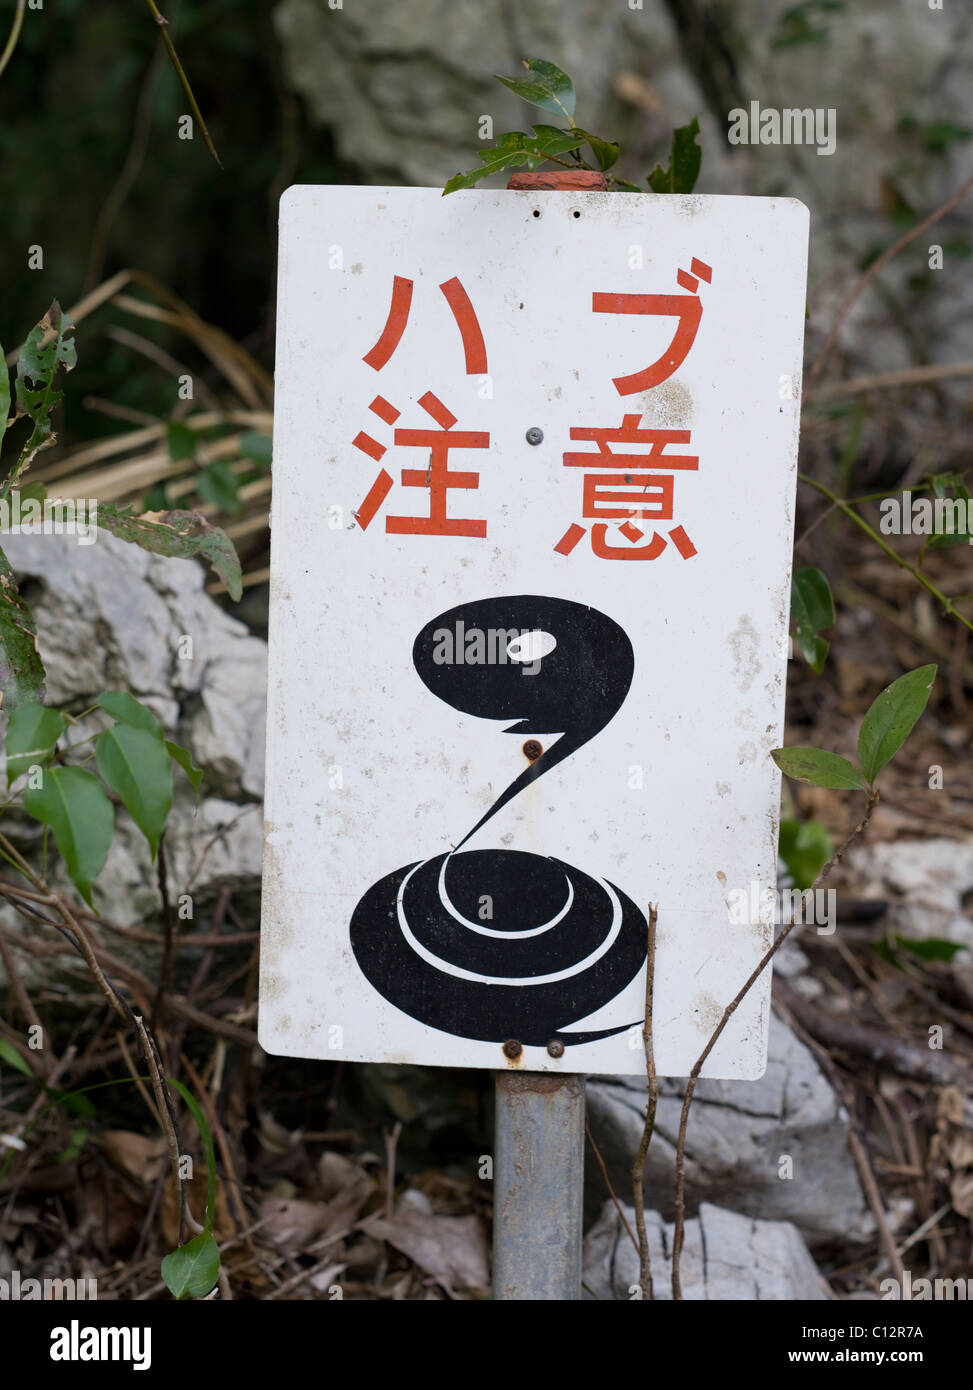 Warning sign for poisonous Habu snake on Okinawa, Japan Stock Photo